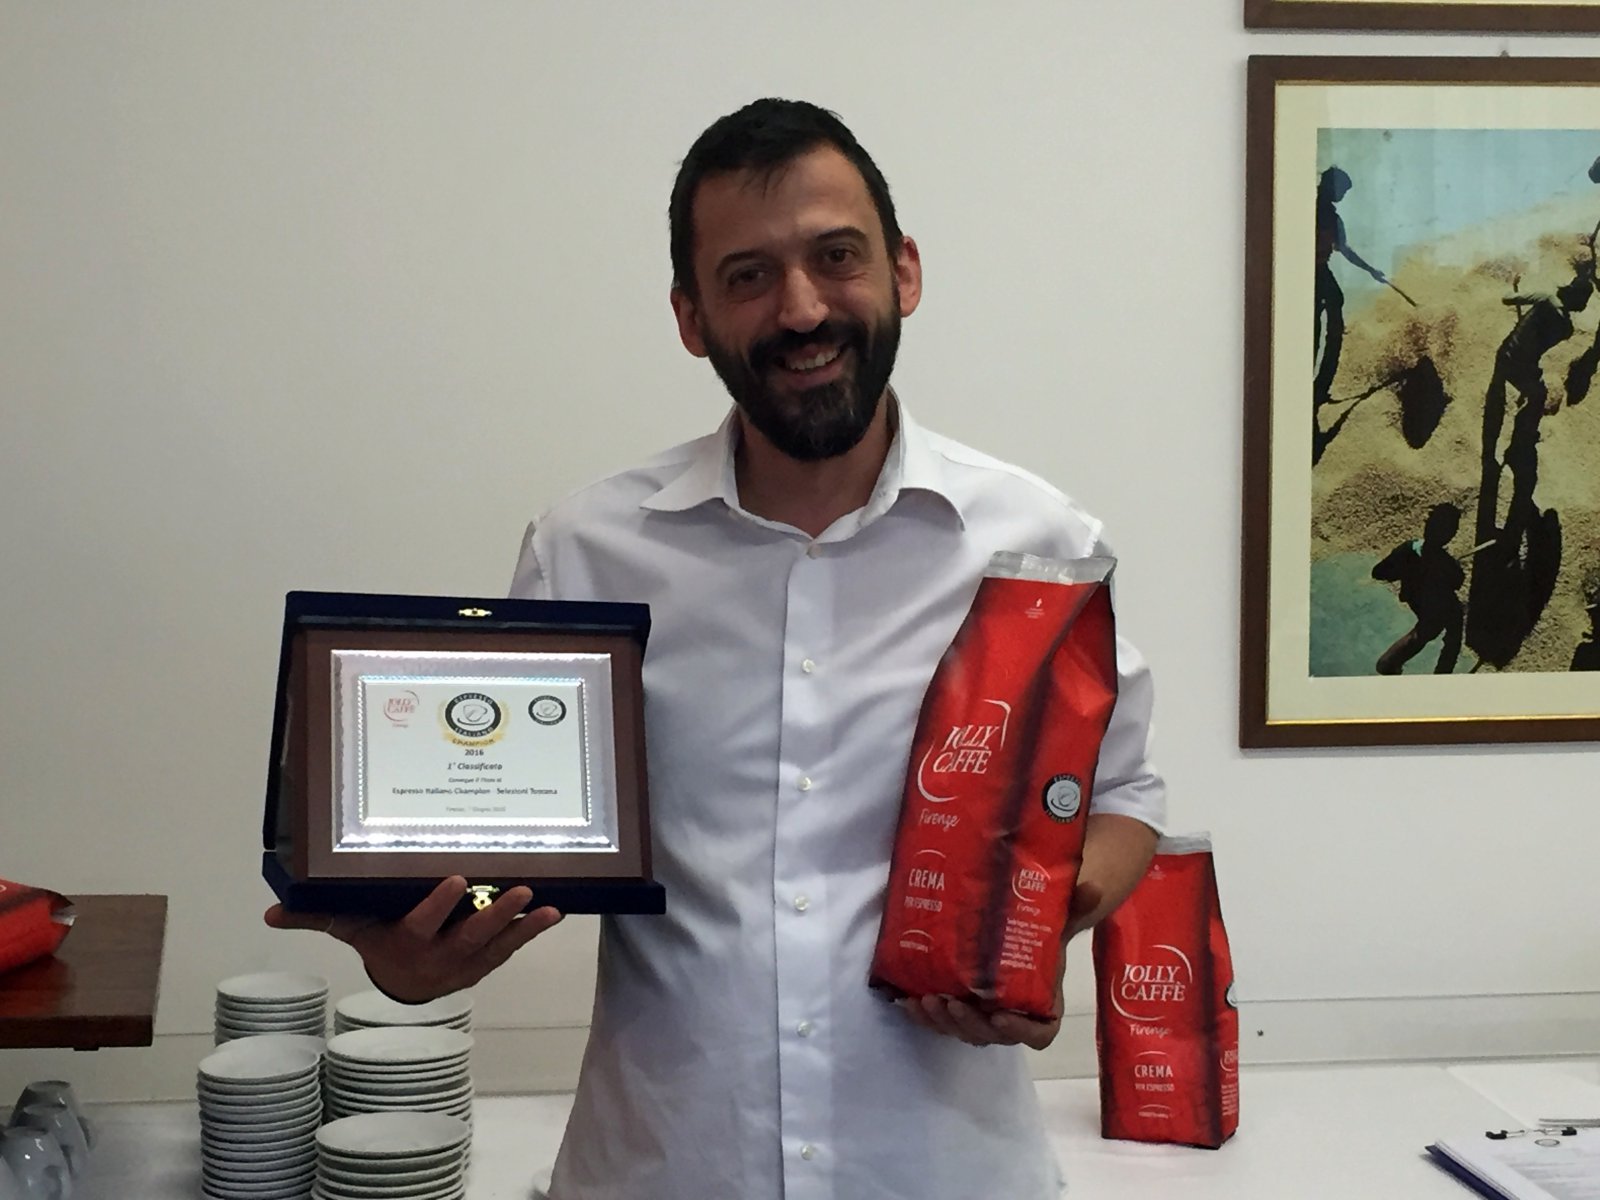  Matteo Checcucci vince la gara preliminare di Espresso Italiano Champion 2016 ospitata da Jolly Caffè